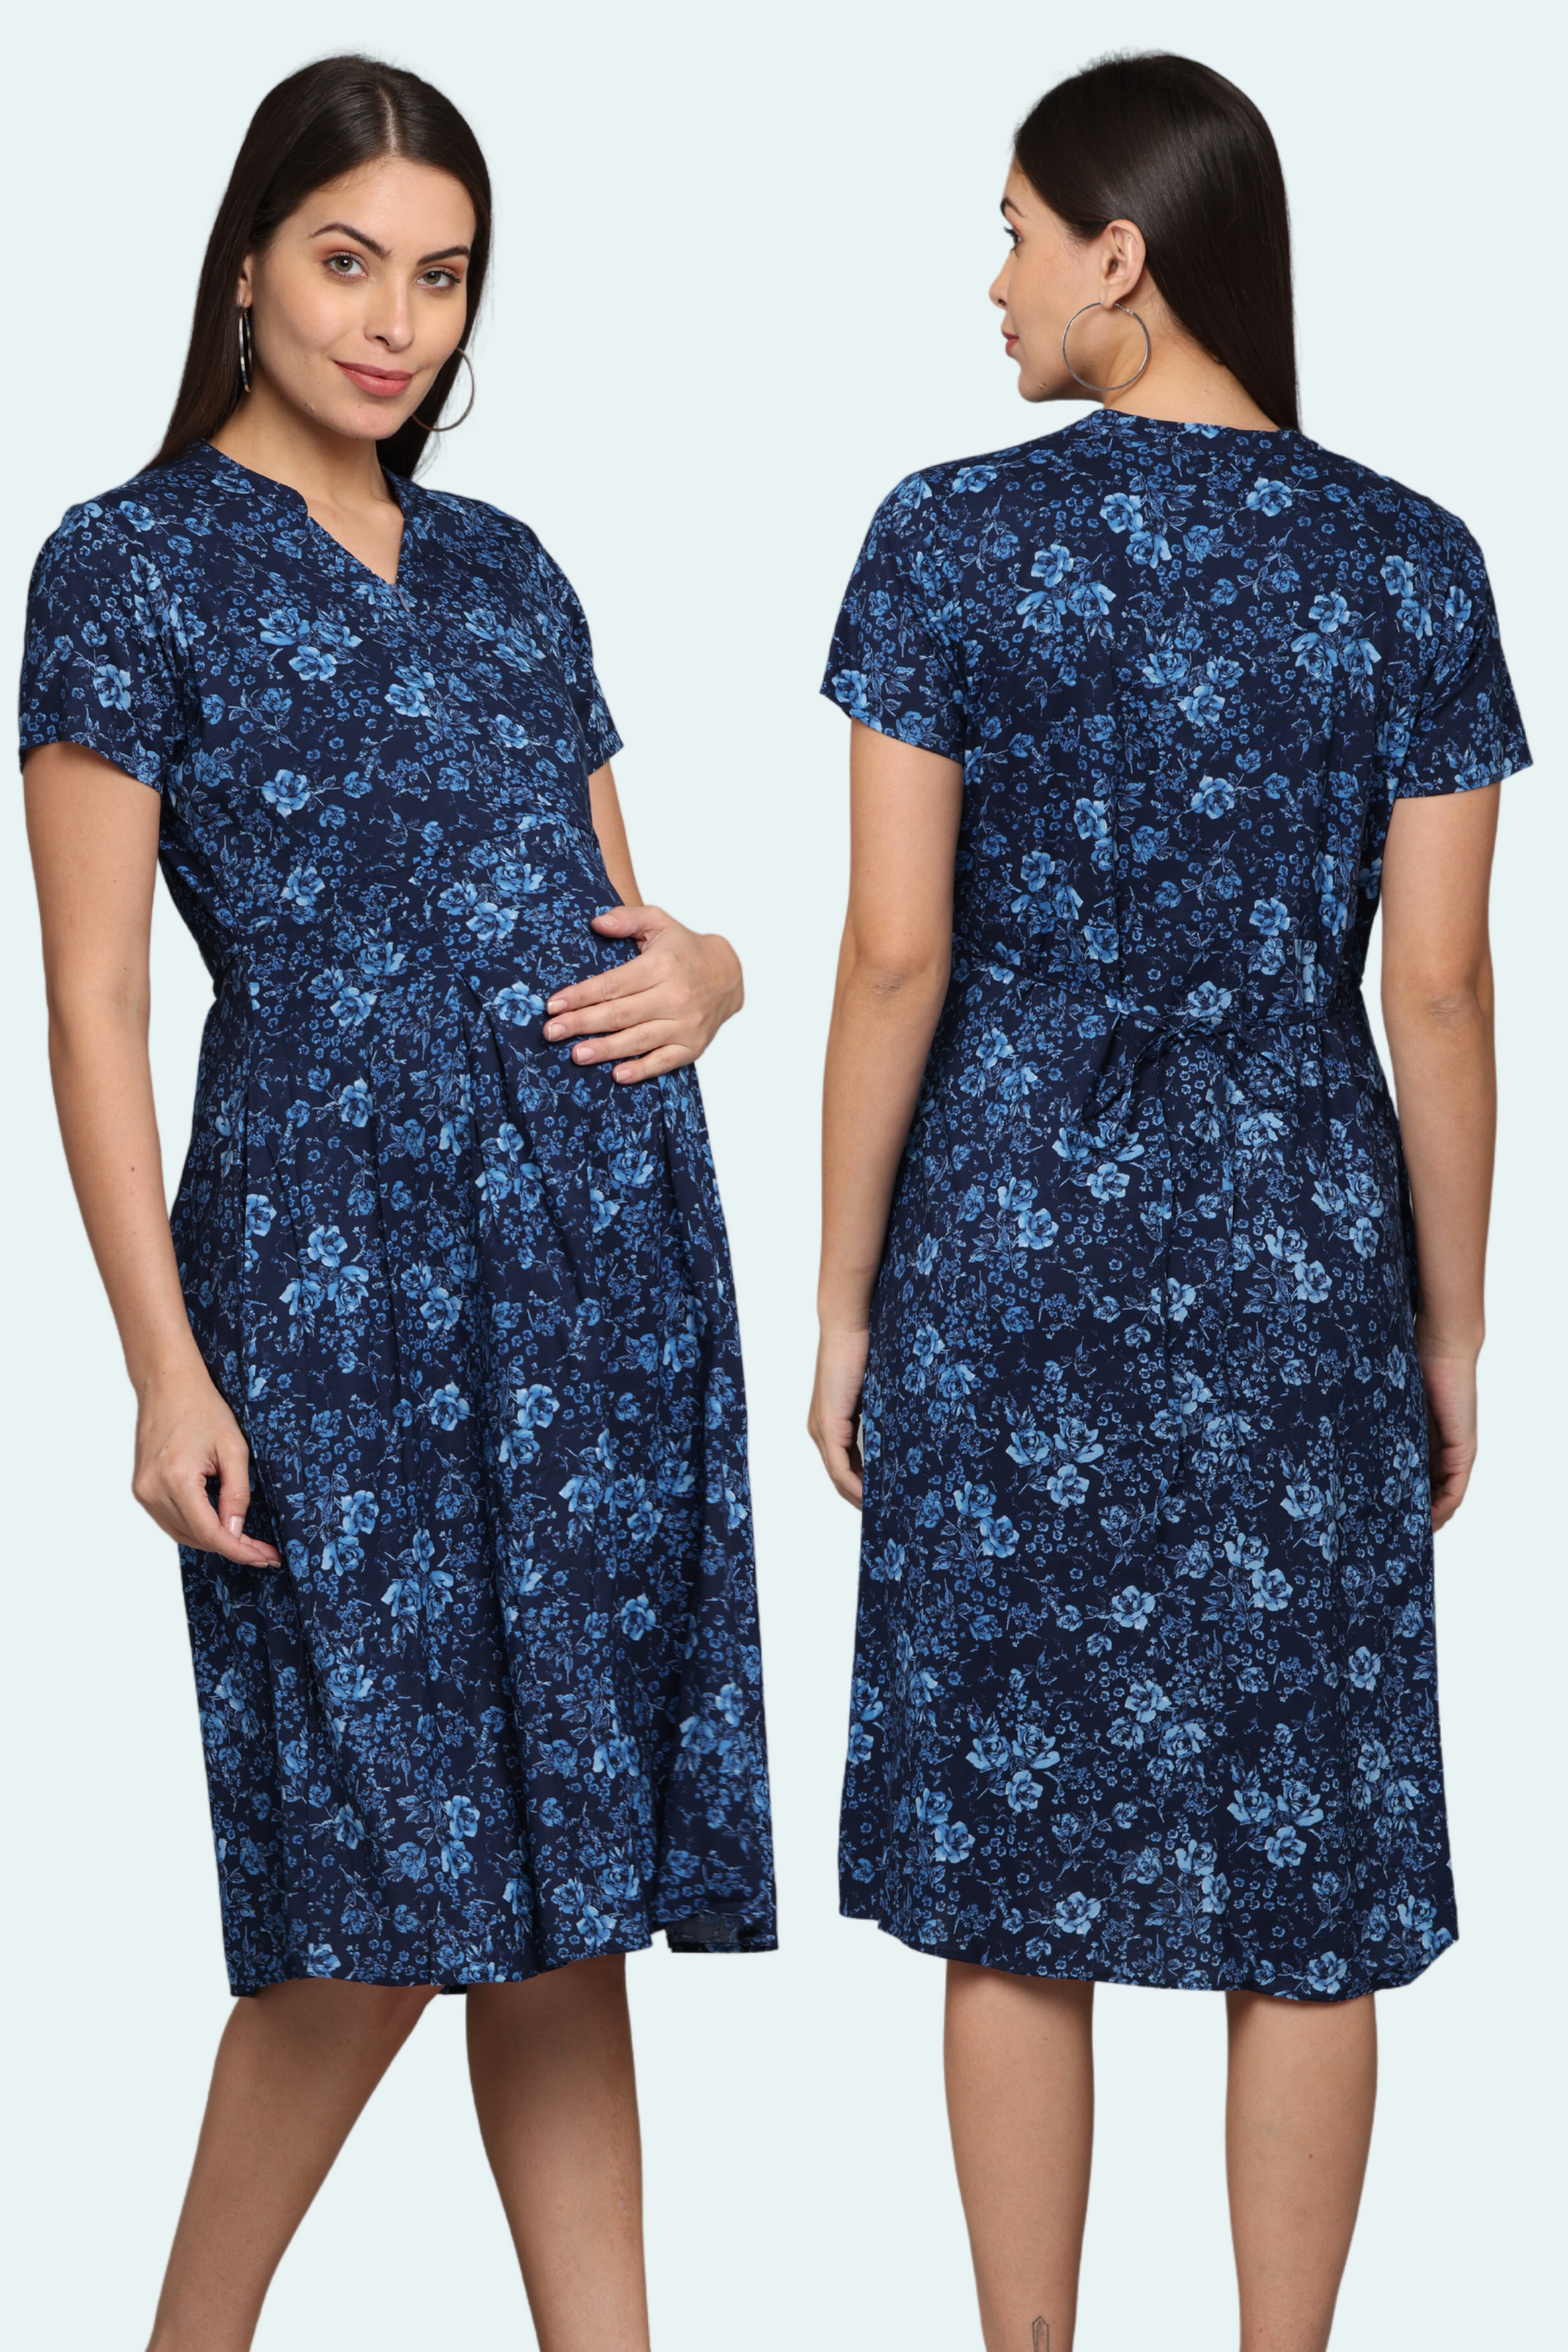 Shop Pregnancy Dress Printed Cotton Navy Blue Floral Designer